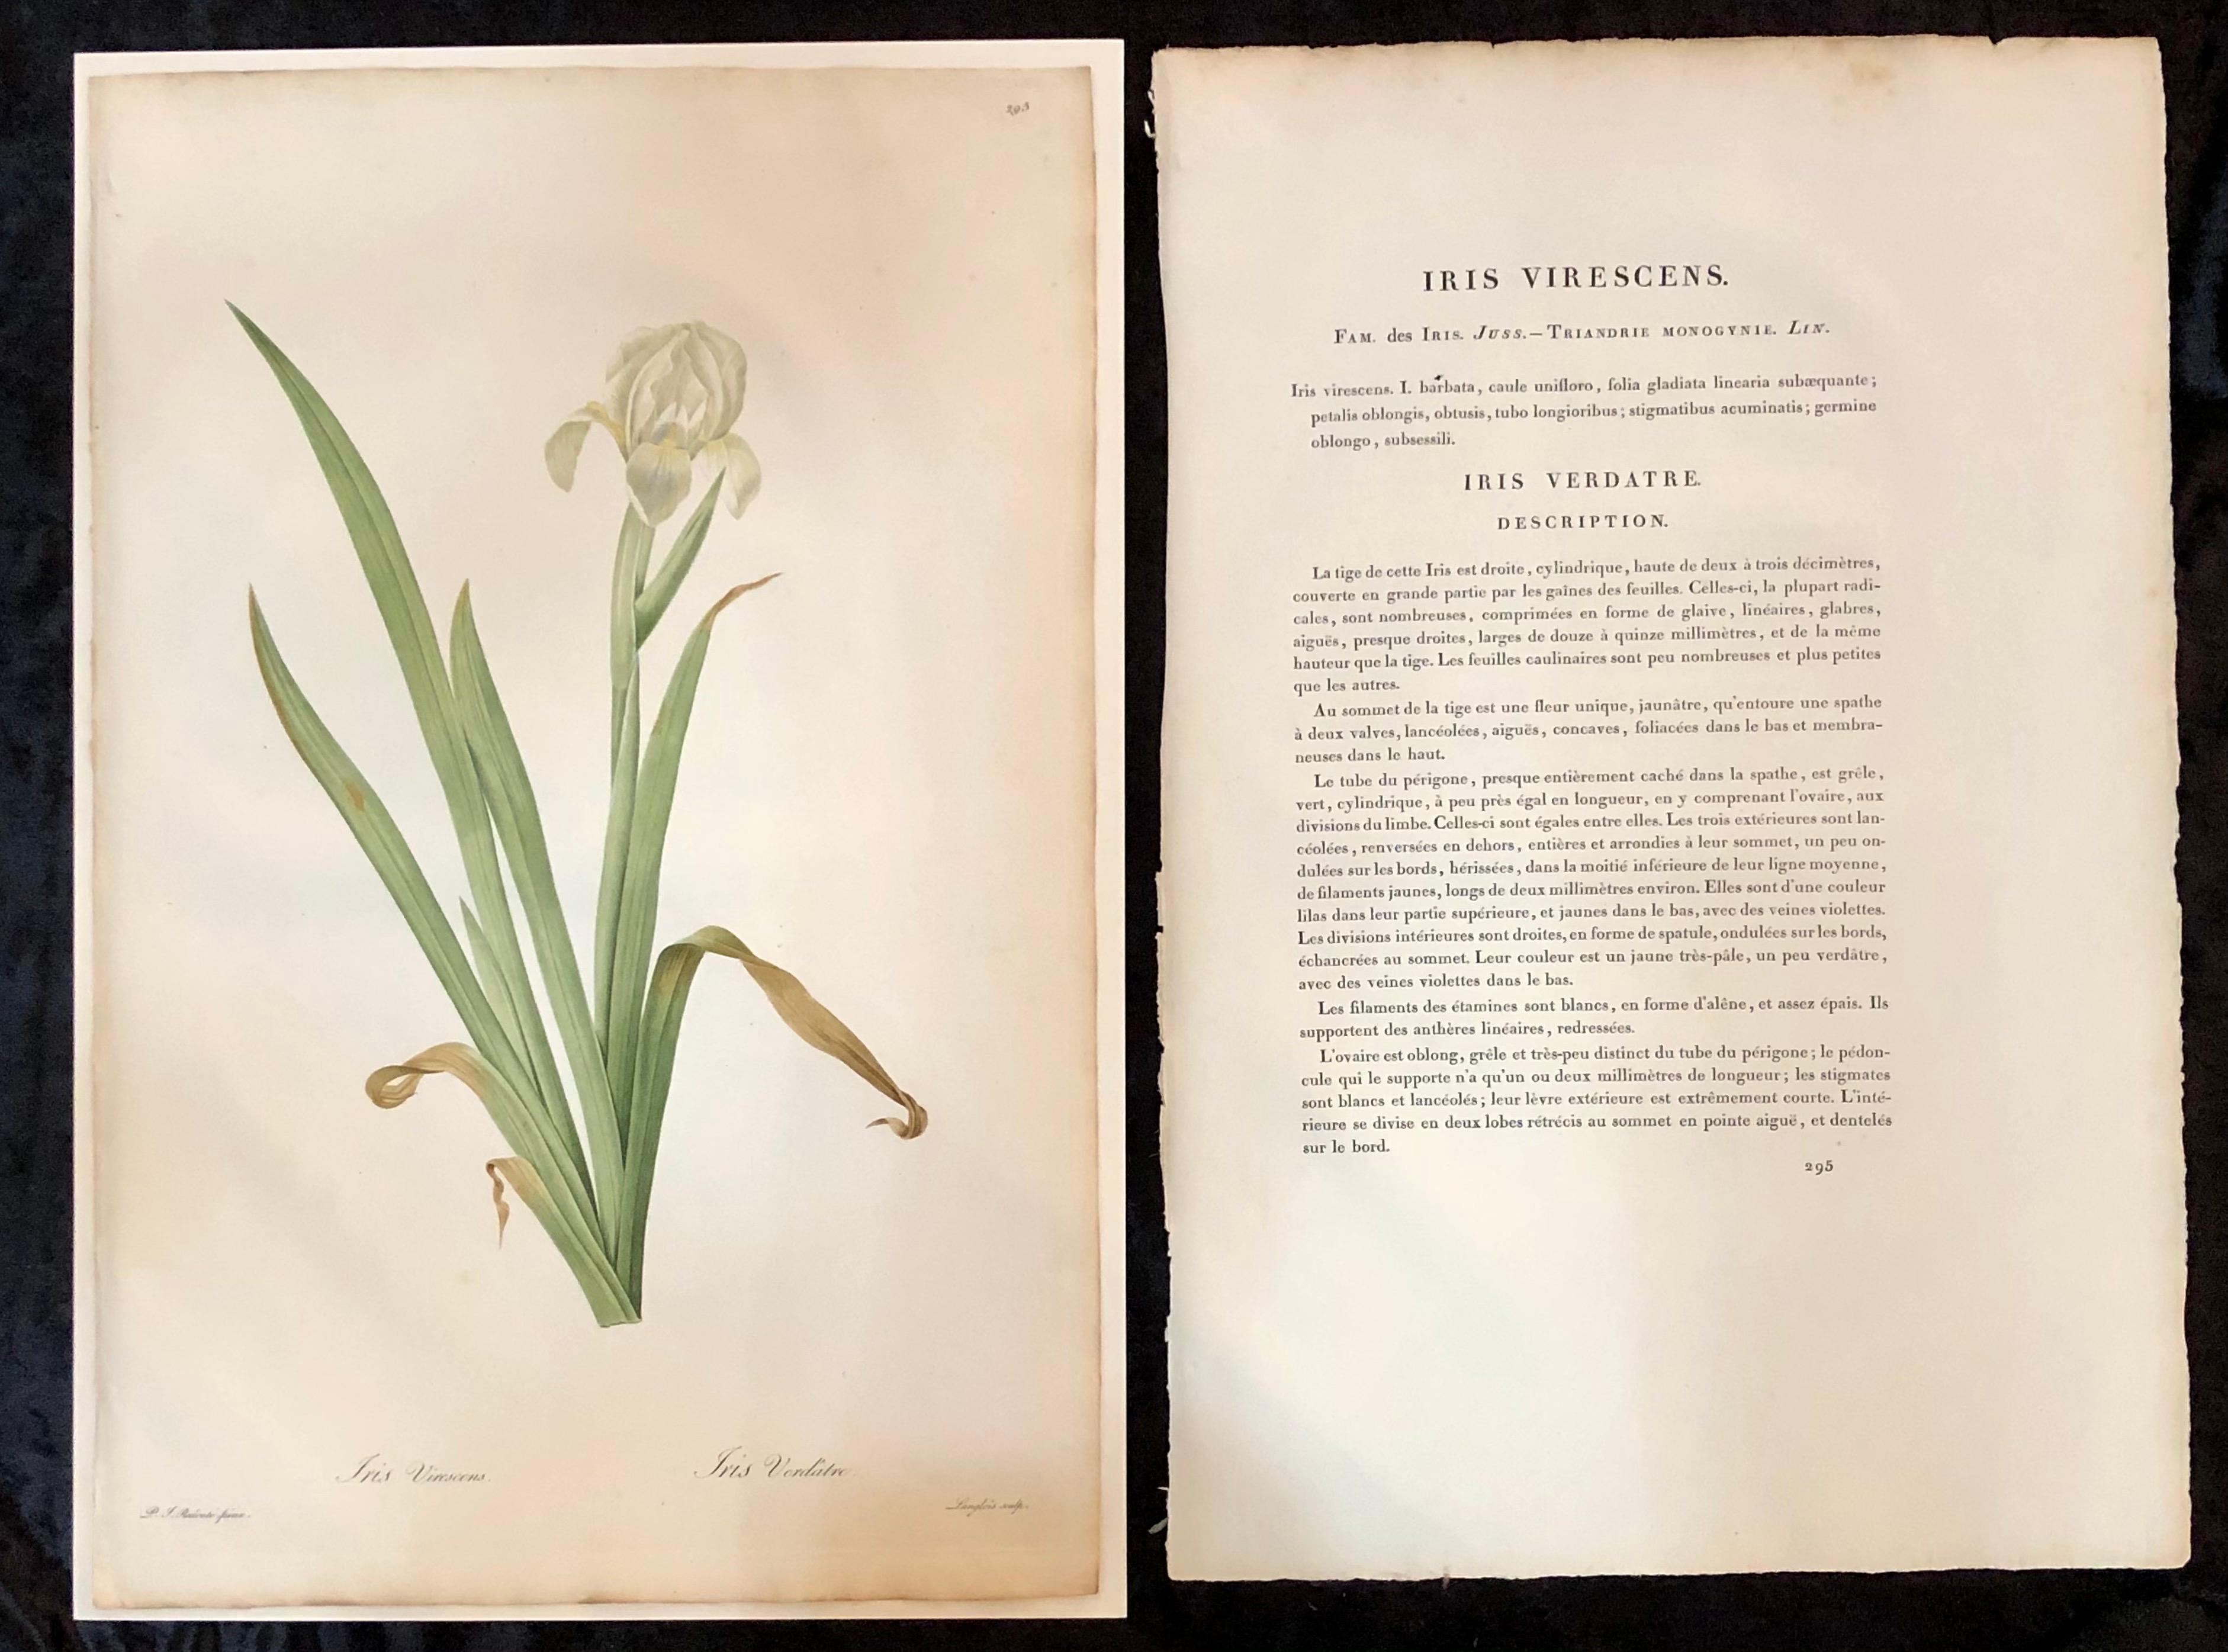 Iris Virescens handkolorierte Gravur signiert und nummeriert P. J. Redoute.
Eines von neun großen und beeindruckend gut gemalten Blumenbildern mit Geschichte und Literatur auf der Rückseite.
Der Höhepunkt der künstlerischen und botanischen